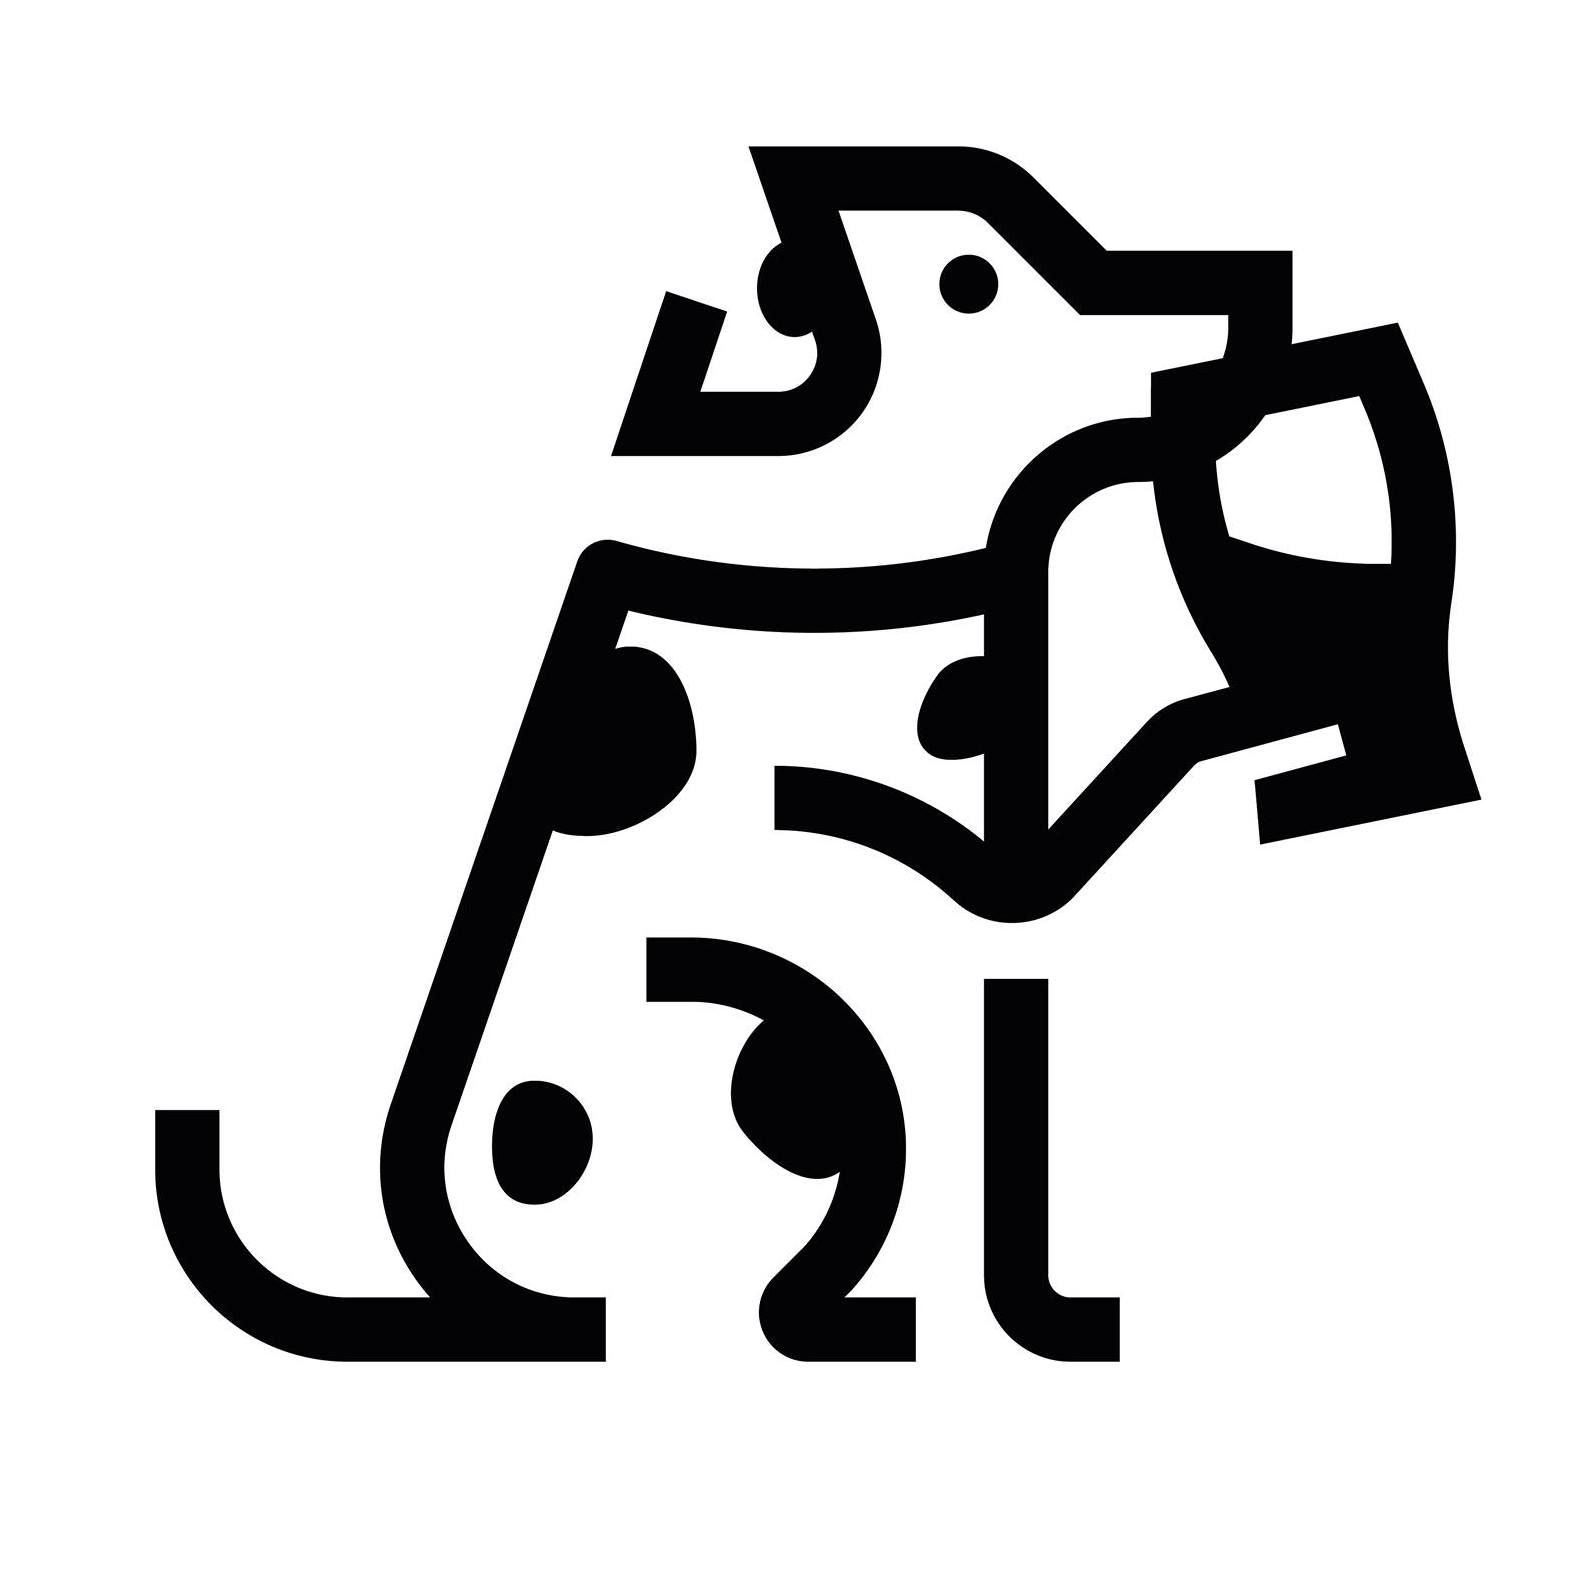 Company logo of Bark Social